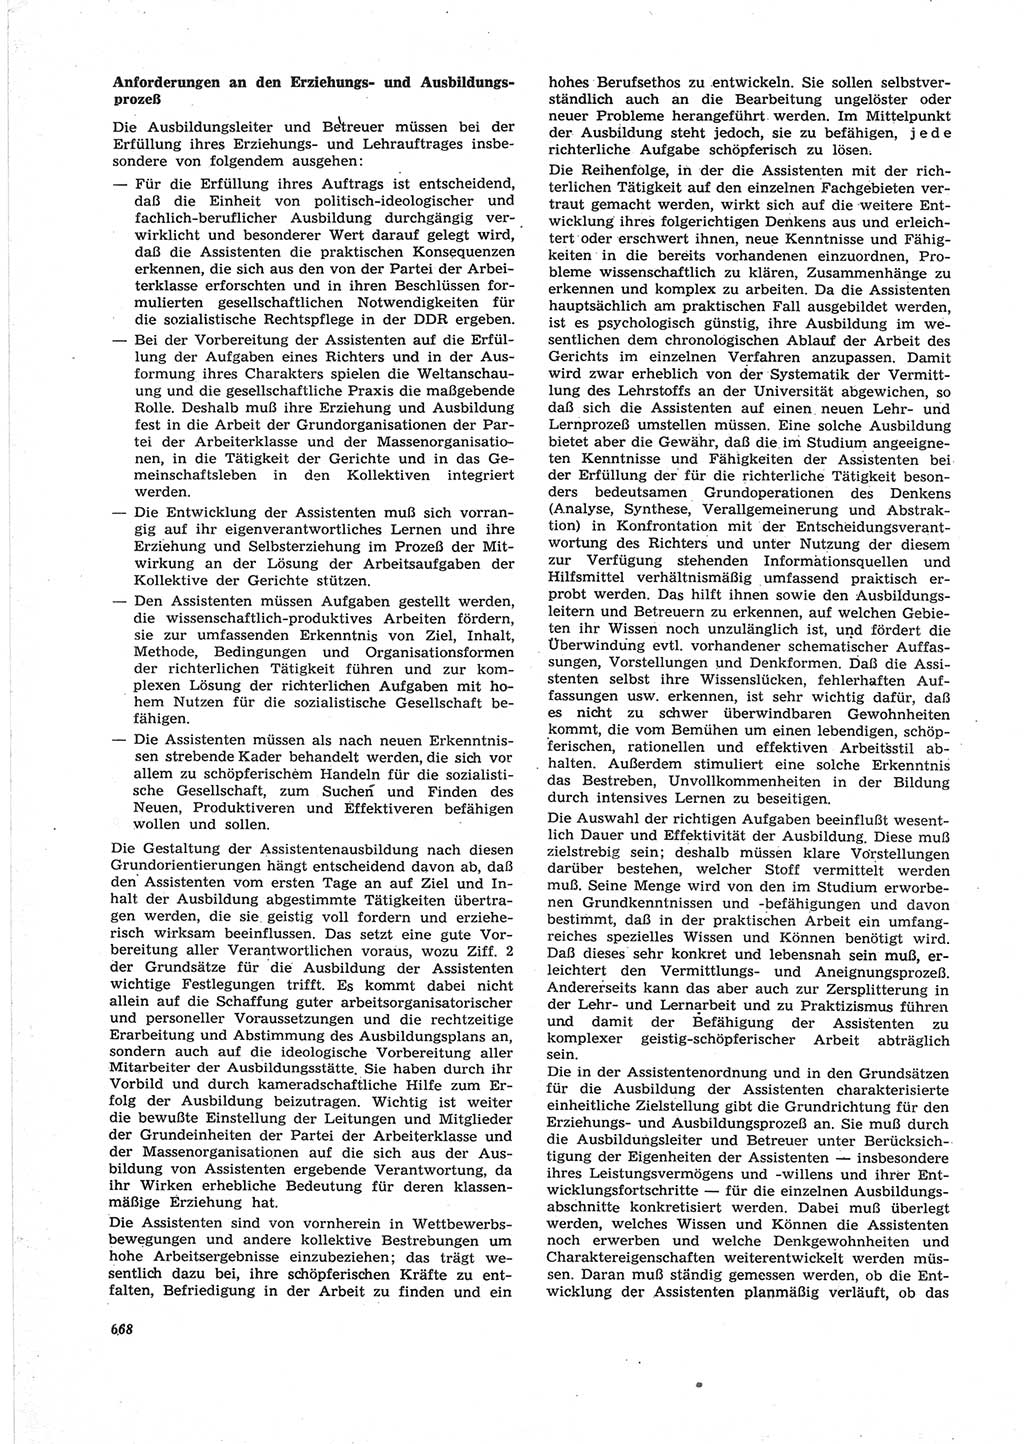 Neue Justiz (NJ), Zeitschrift für Recht und Rechtswissenschaft [Deutsche Demokratische Republik (DDR)], 25. Jahrgang 1971, Seite 668 (NJ DDR 1971, S. 668)